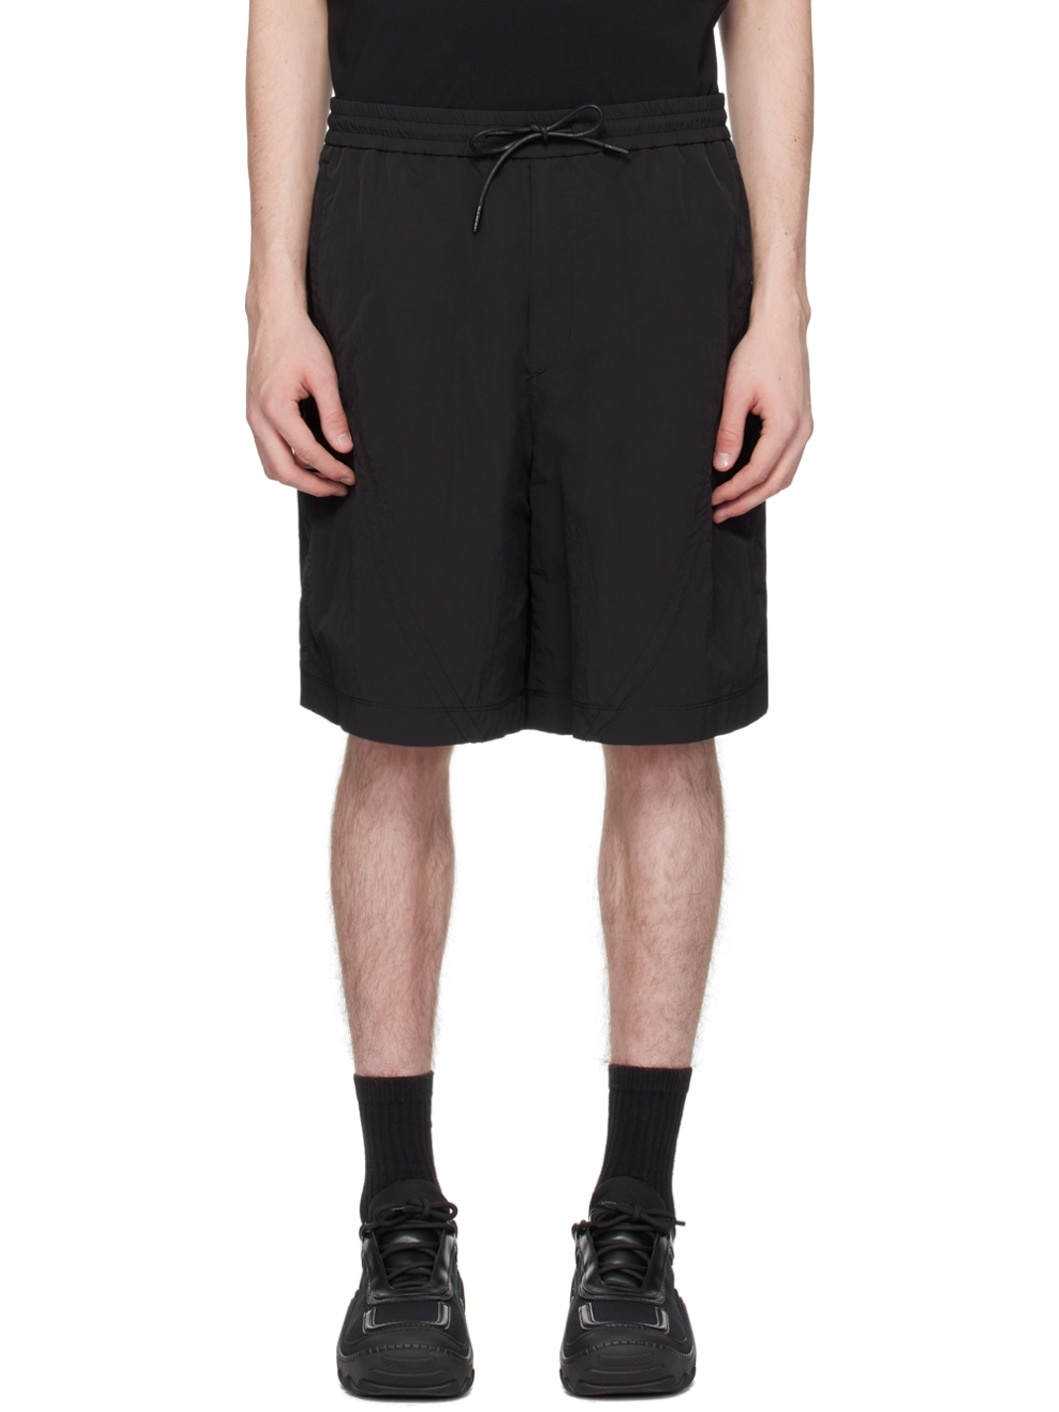 Black Drawstring Shorts - 1